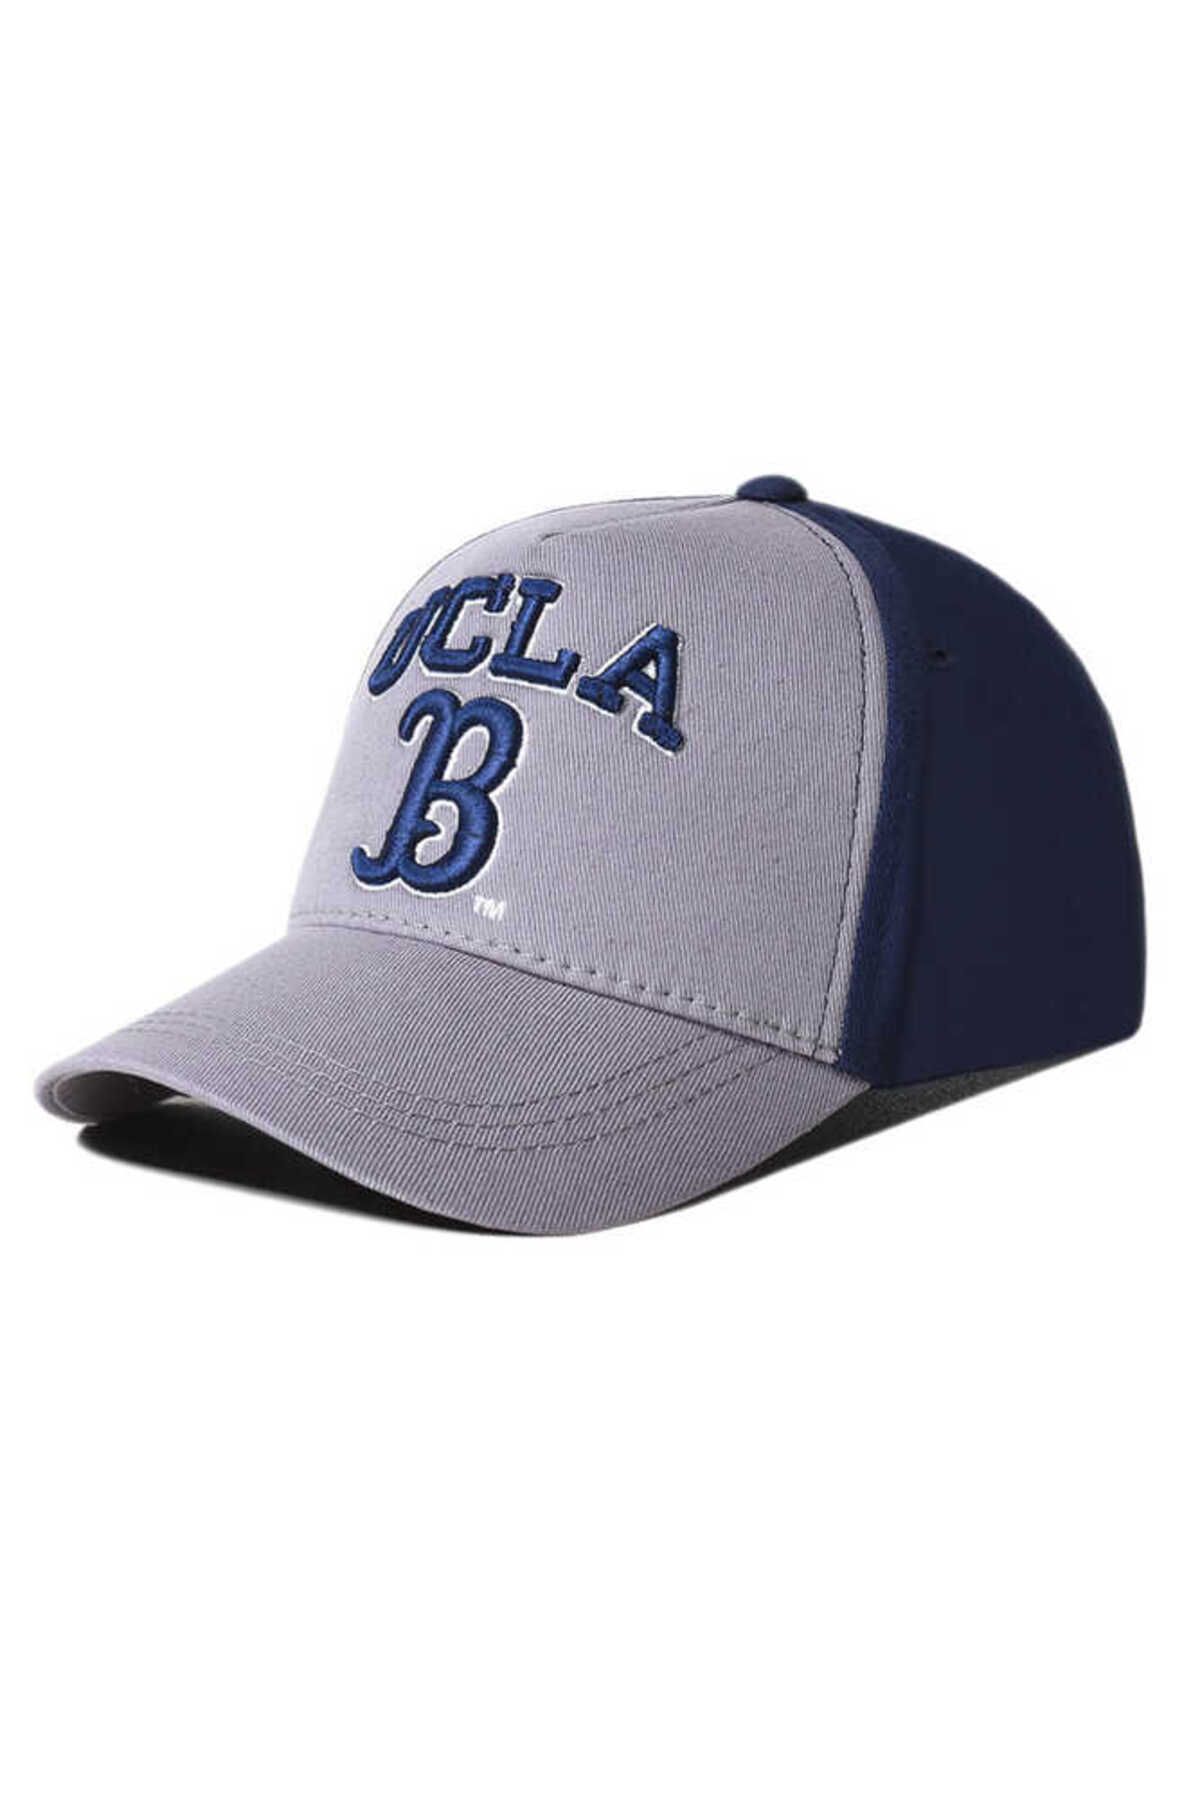 Ucla Malıbu Gri Baseball Cap Nakışlı Şapka